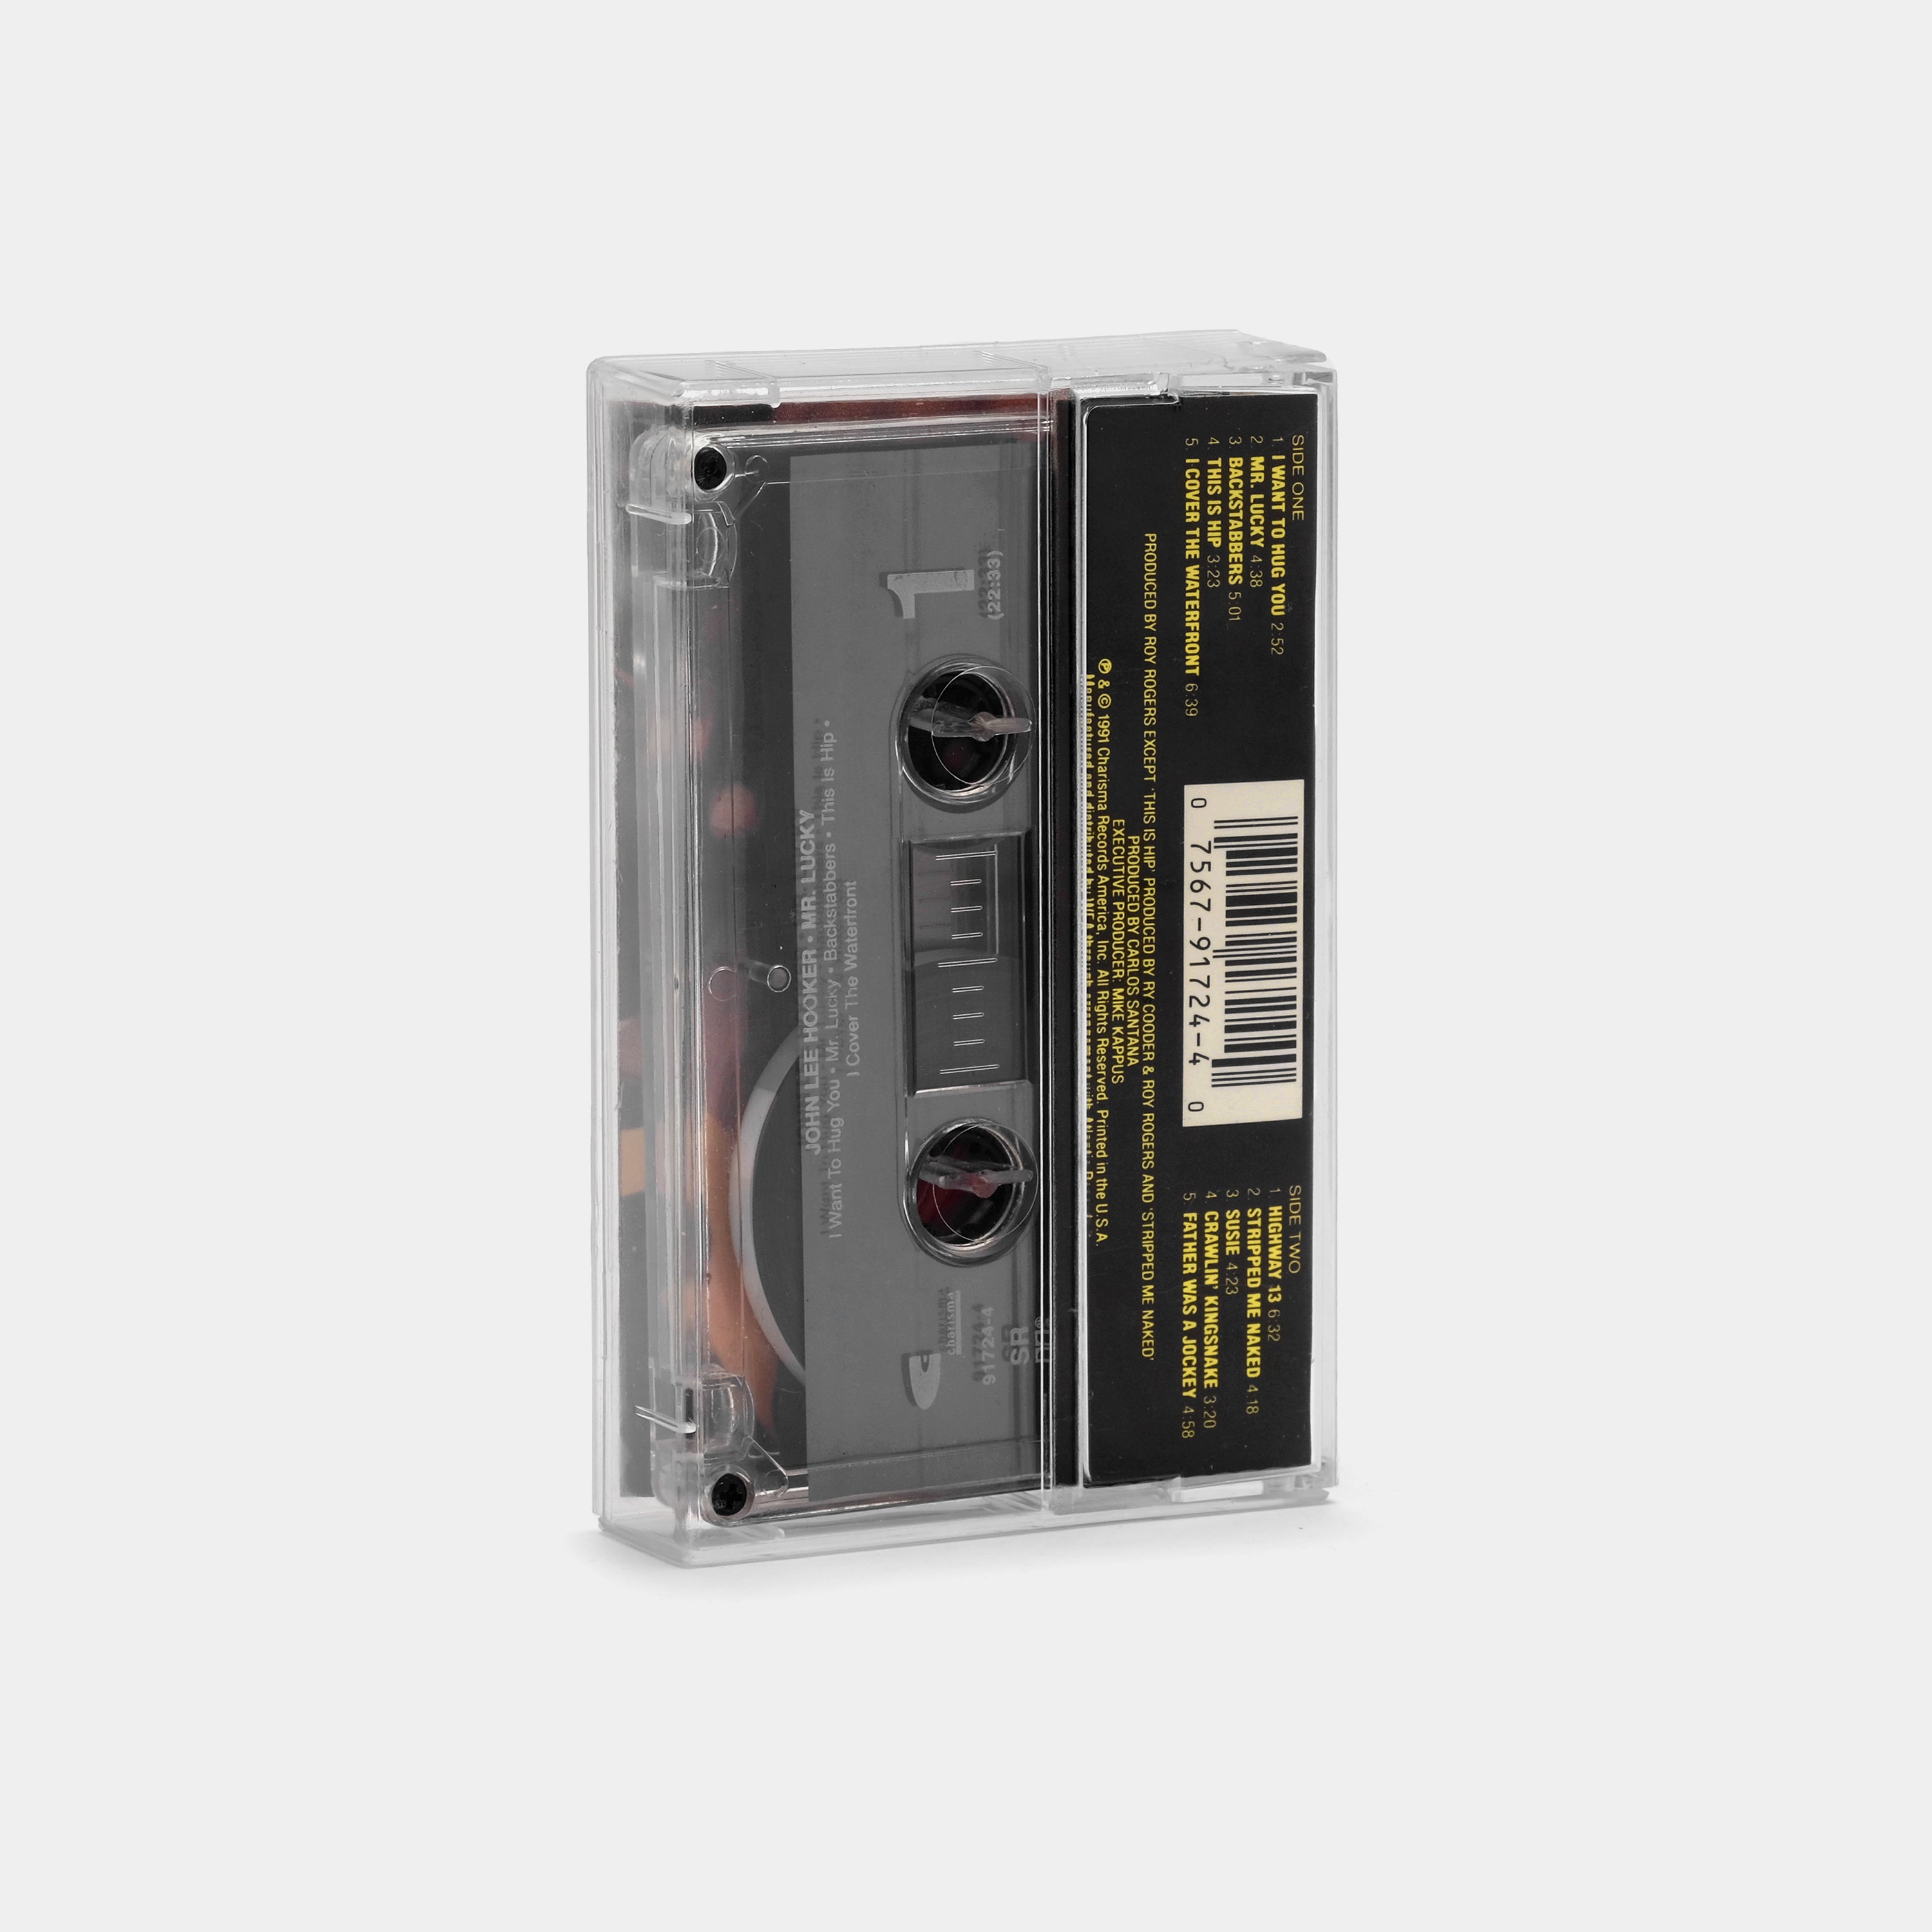 John Lee Hooker - Mr. Lucky Cassette Tape